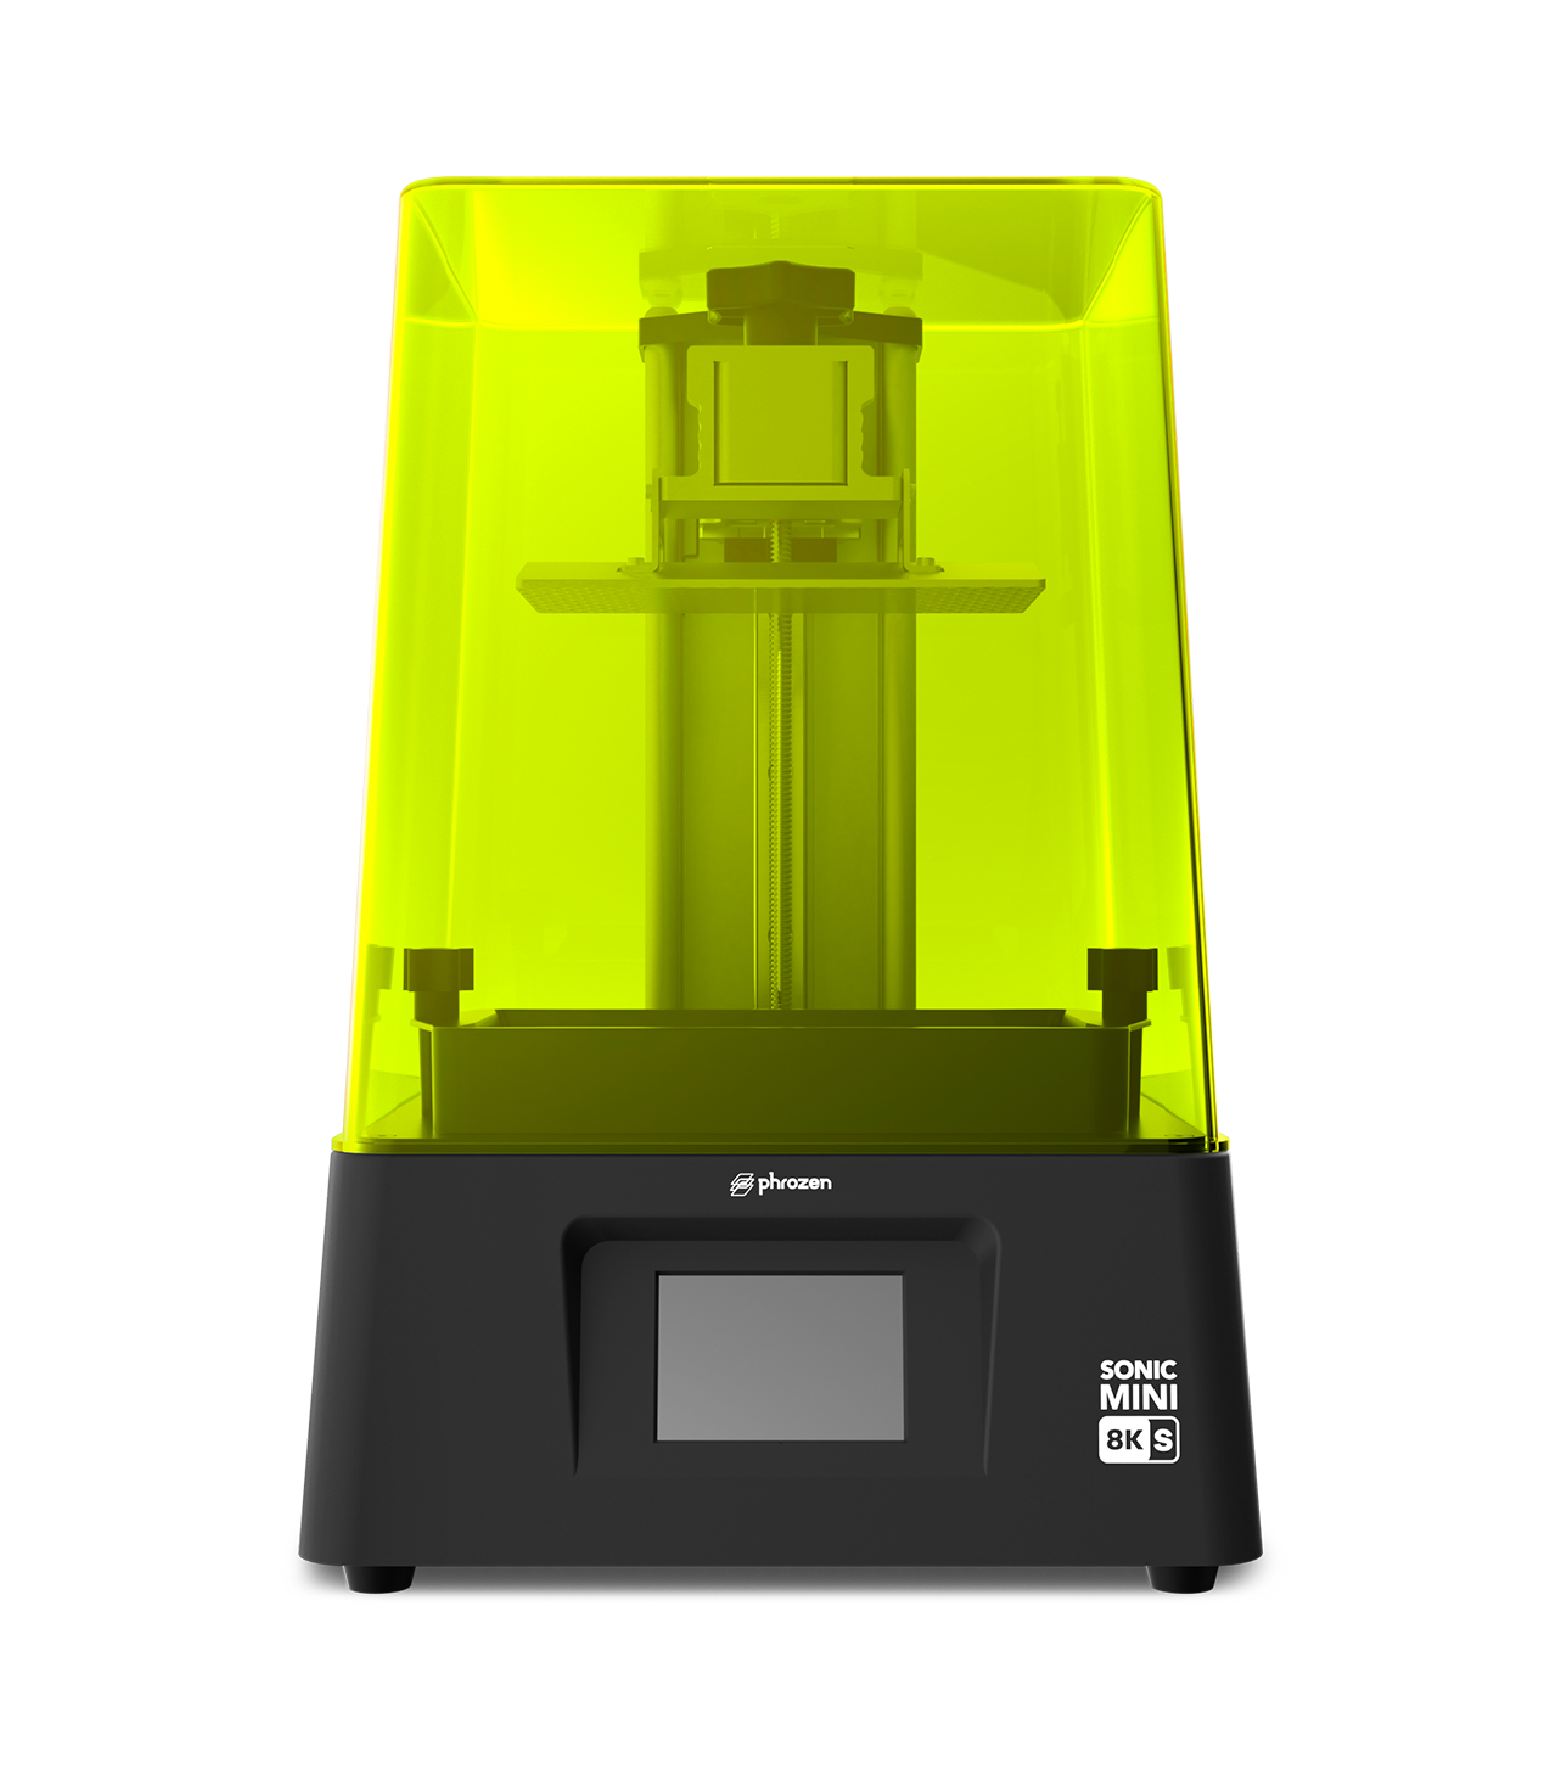 【開放預購】Phrozen Sonic Mini 8K S - LCD 3D打印機